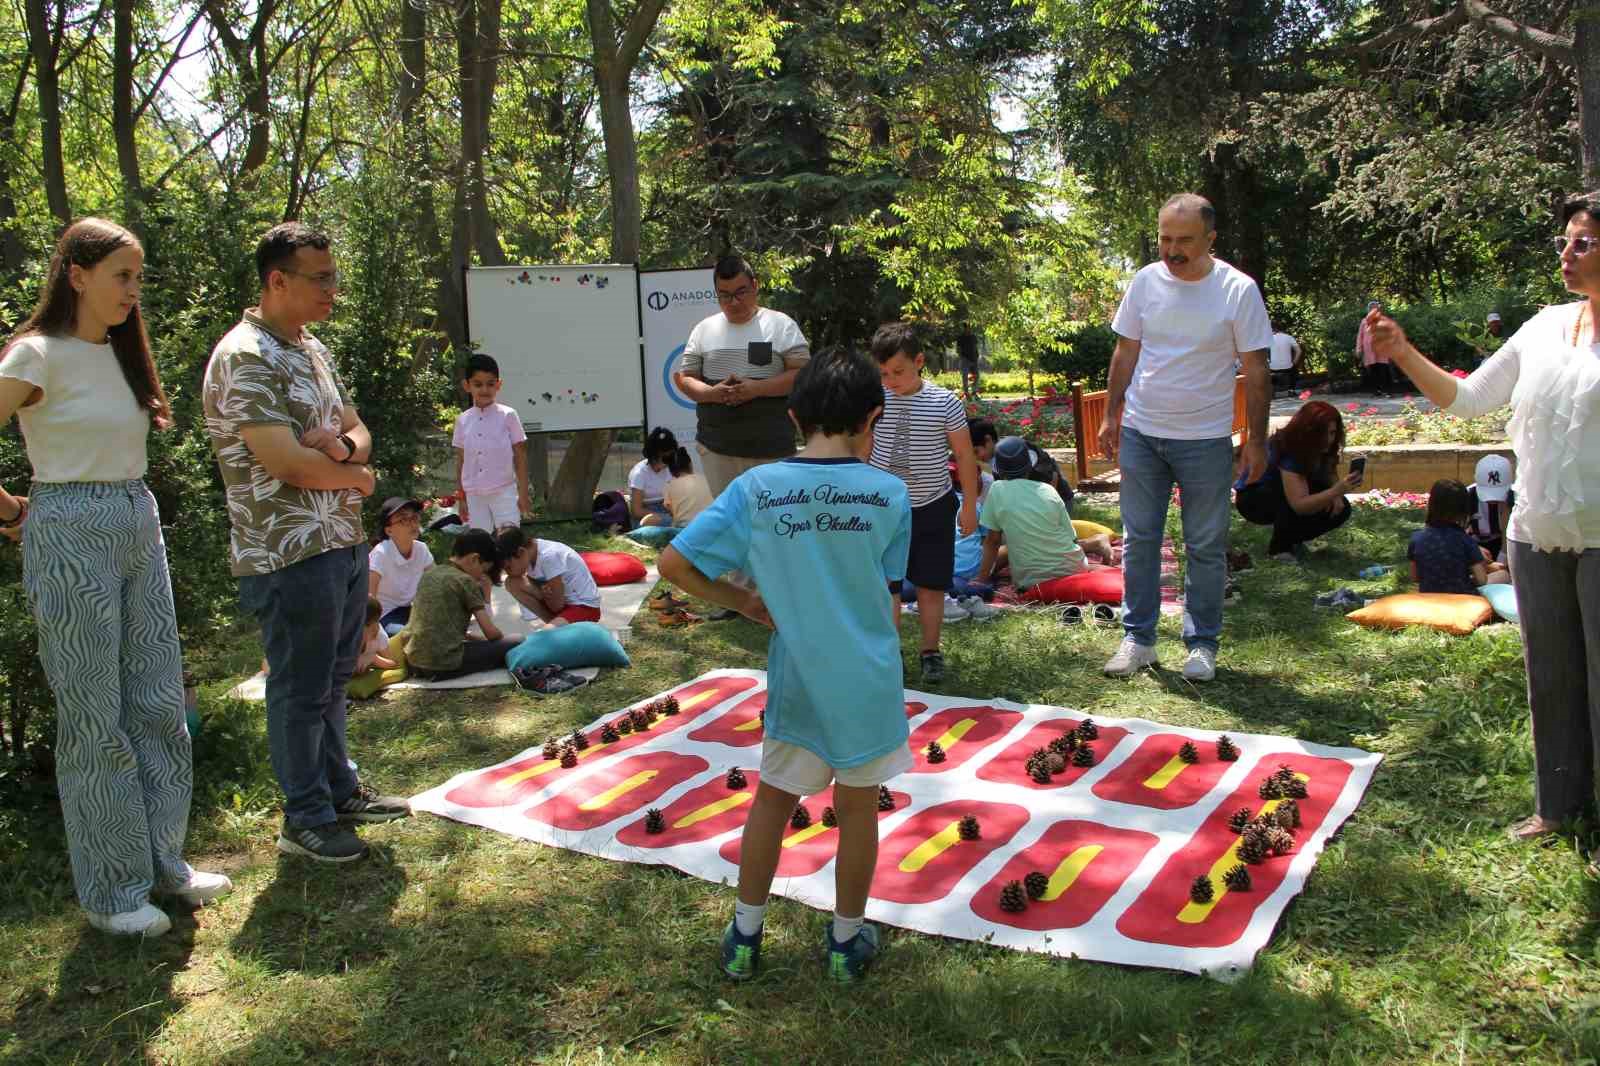 Romanya’da düzenlenecek olan geleneksel akıl oyunları turnuvası için hazırlanıyorlar